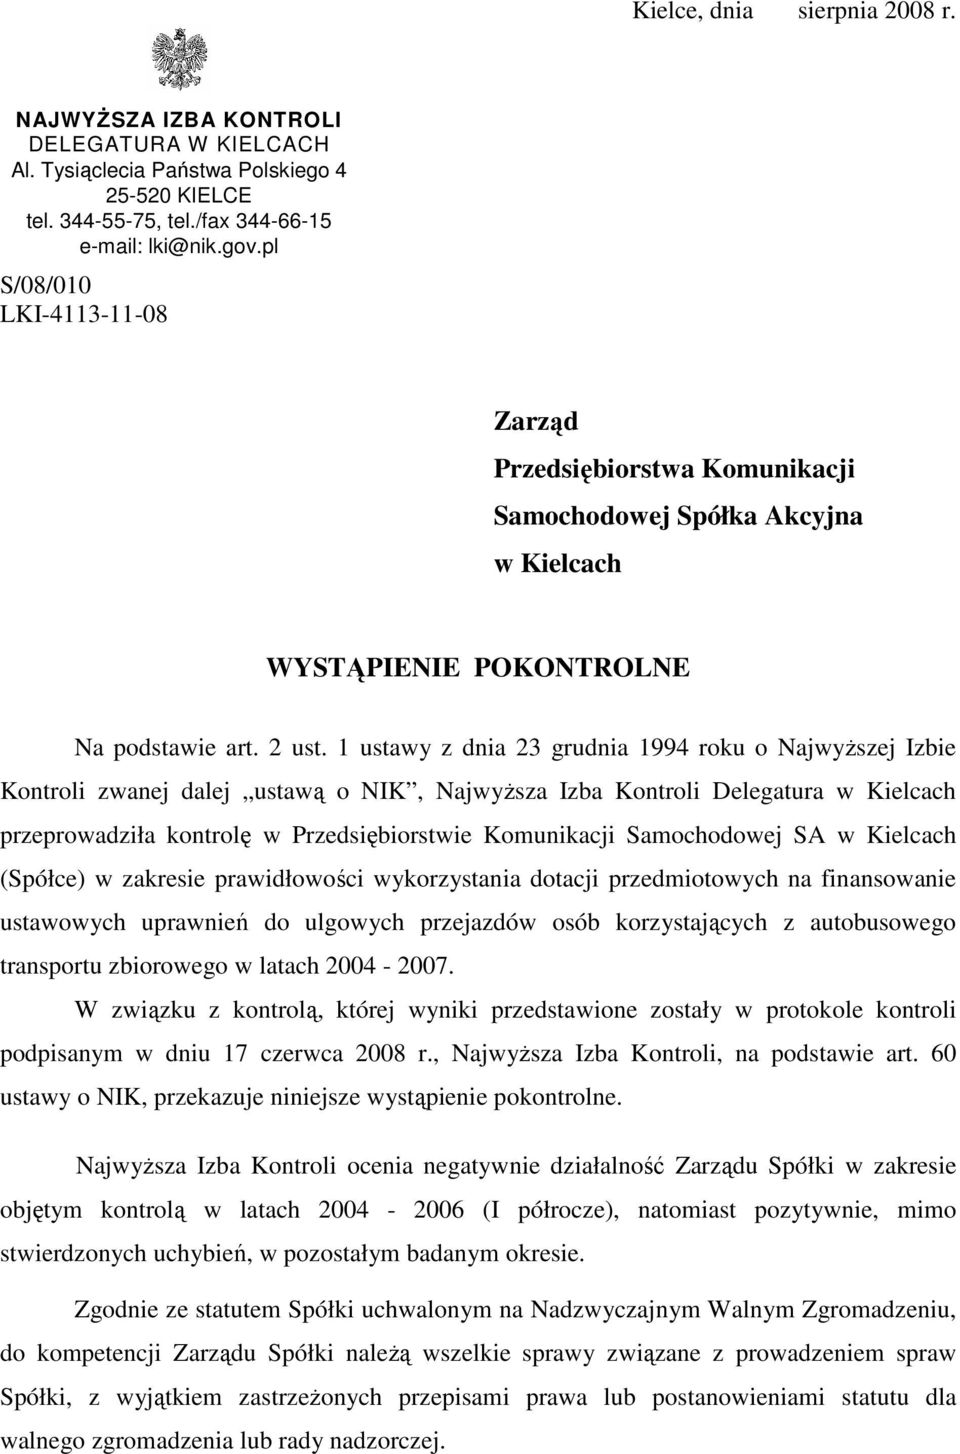 1 ustawy z dnia 23 grudnia 1994 roku o NajwyŜszej Izbie Kontroli zwanej dalej ustawą o NIK, NajwyŜsza Izba Kontroli Delegatura w Kielcach przeprowadziła kontrolę w Przedsiębiorstwie Komunikacji